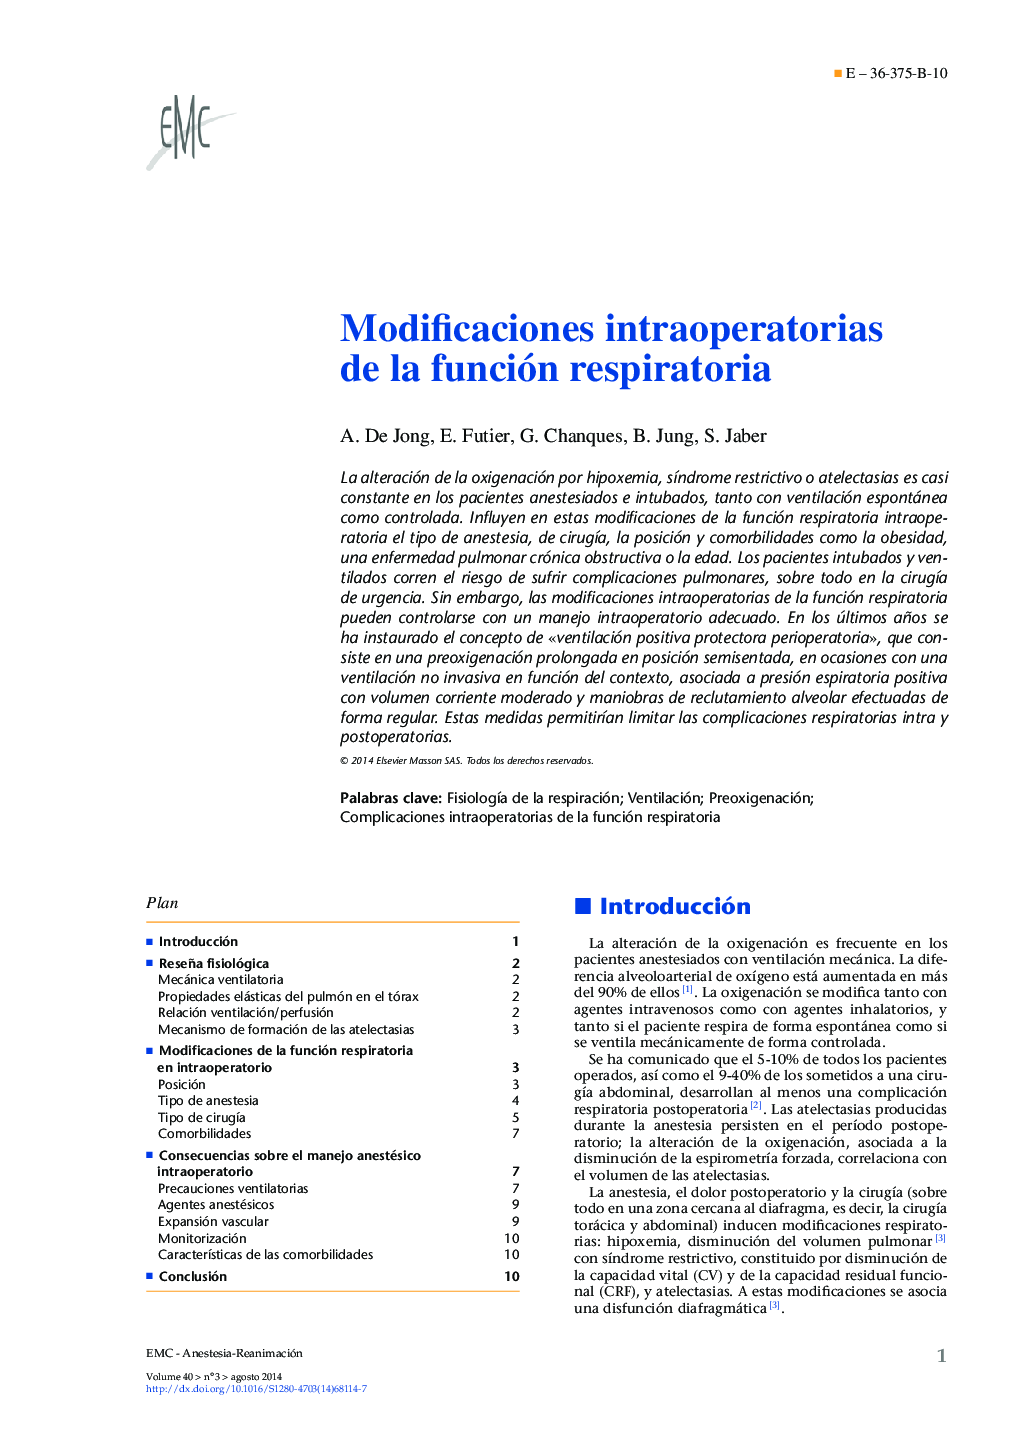 Modificaciones intraoperatorias de la función respiratoria